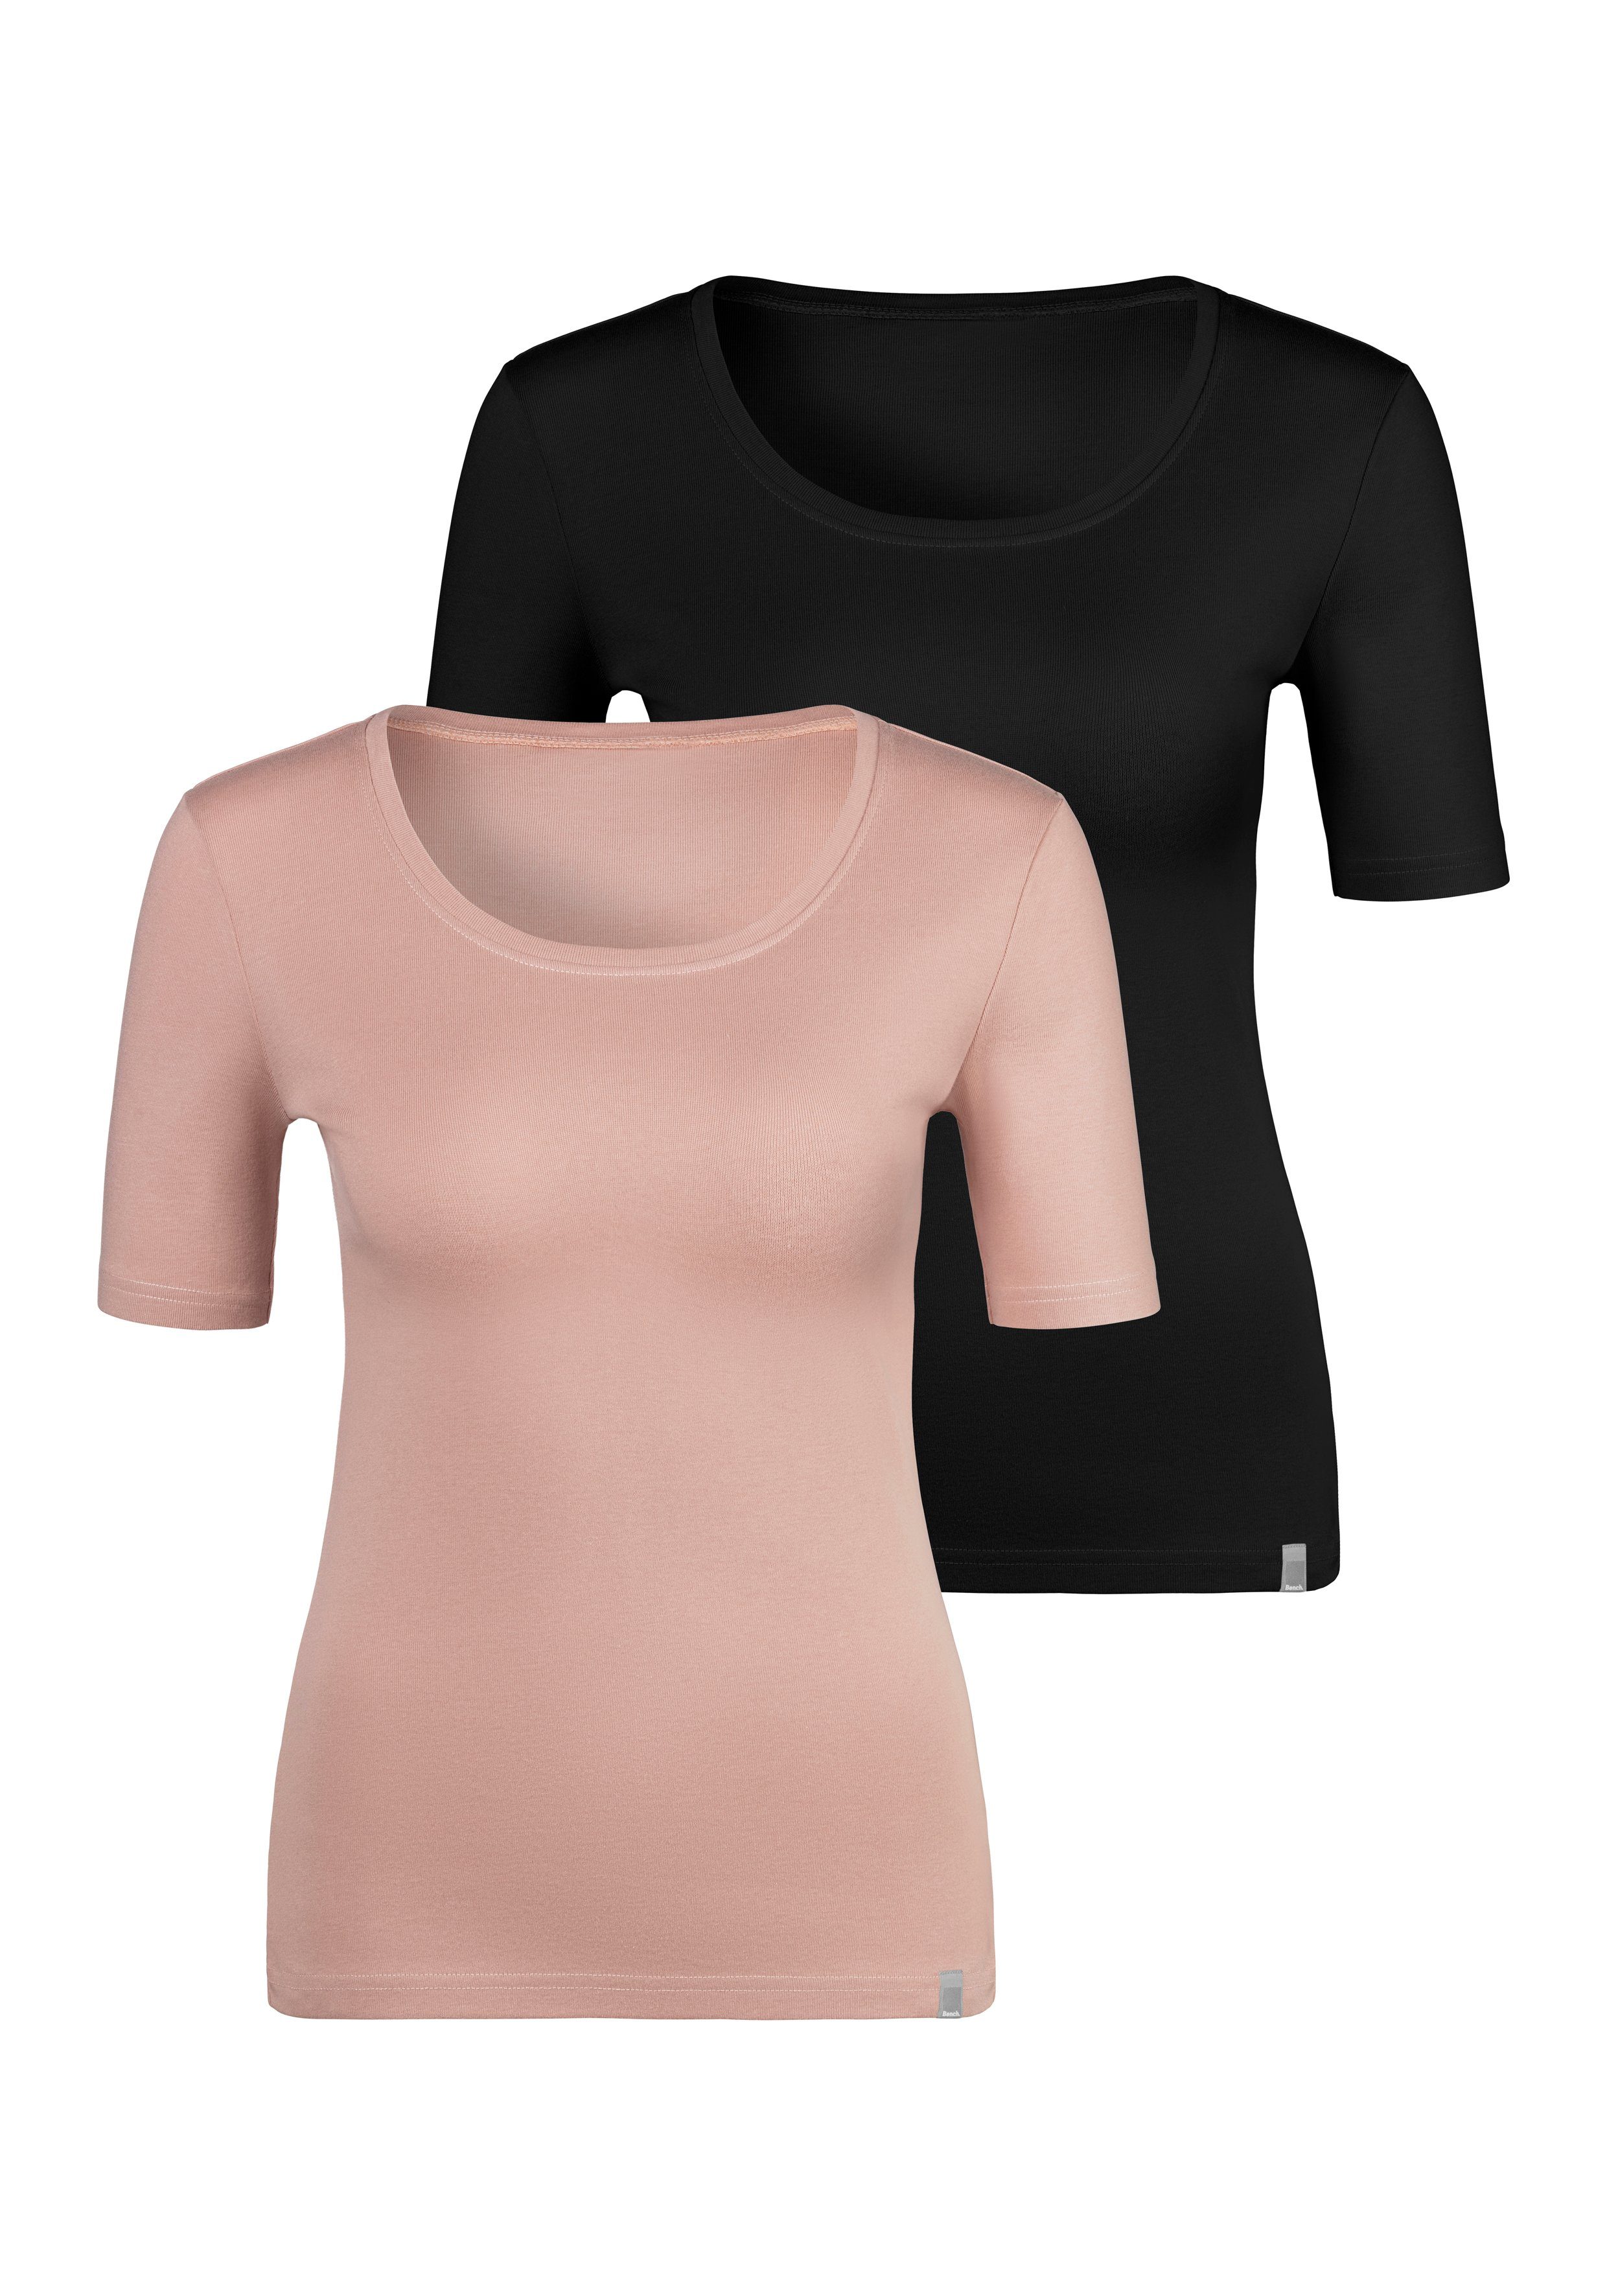 Absolut beliebt Bench. T-Shirt (2er-Pack) Unterziehshirt Feinripp-Qualität, weicher aus rose, schwarz